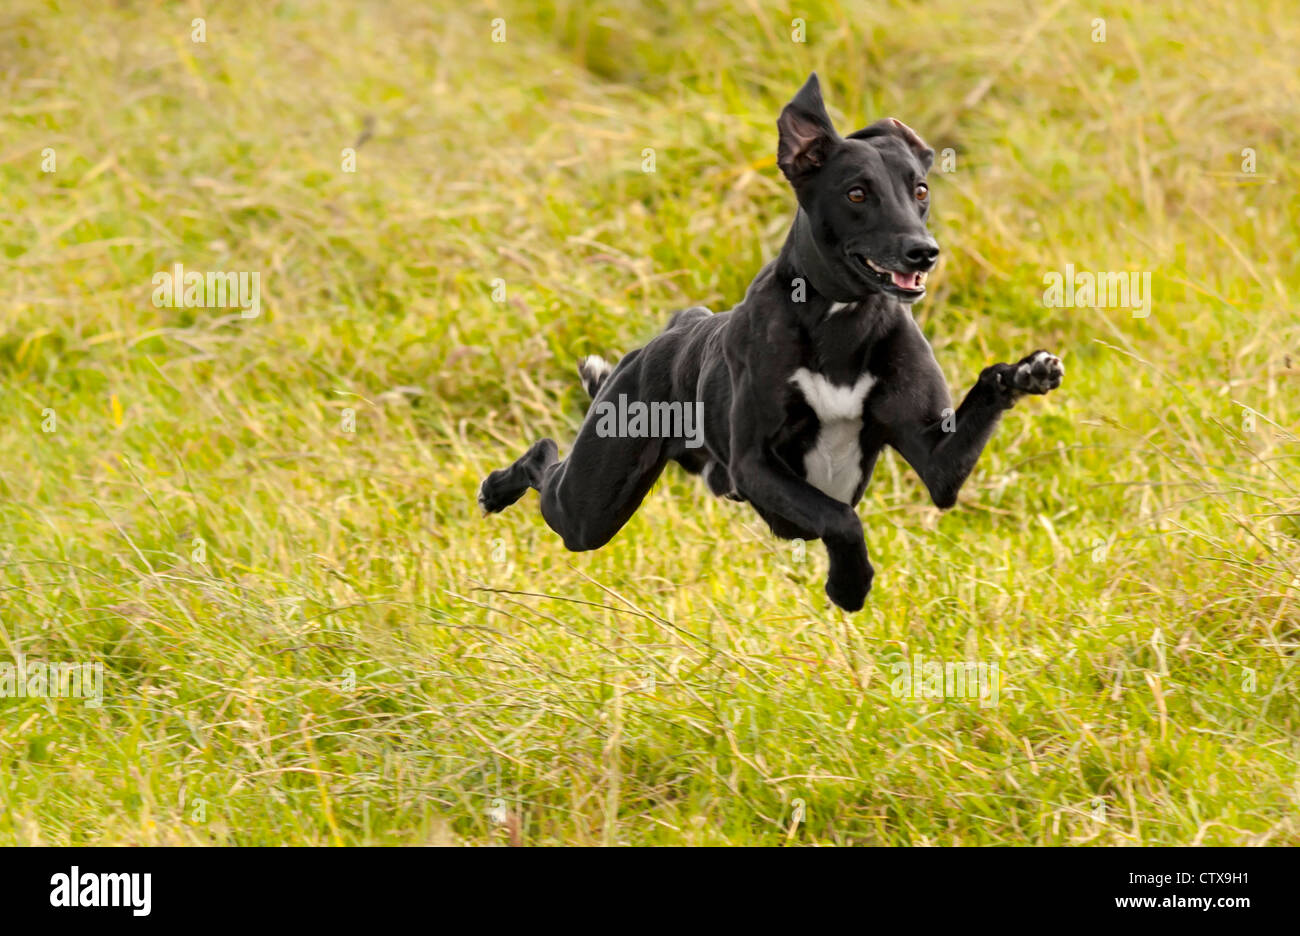 Cane che corre in un campo di erba con tutte e quattro le zampe dal suolo, il cane è un lurcher (incrocio tra un levriero ed un whippet). Foto Stock